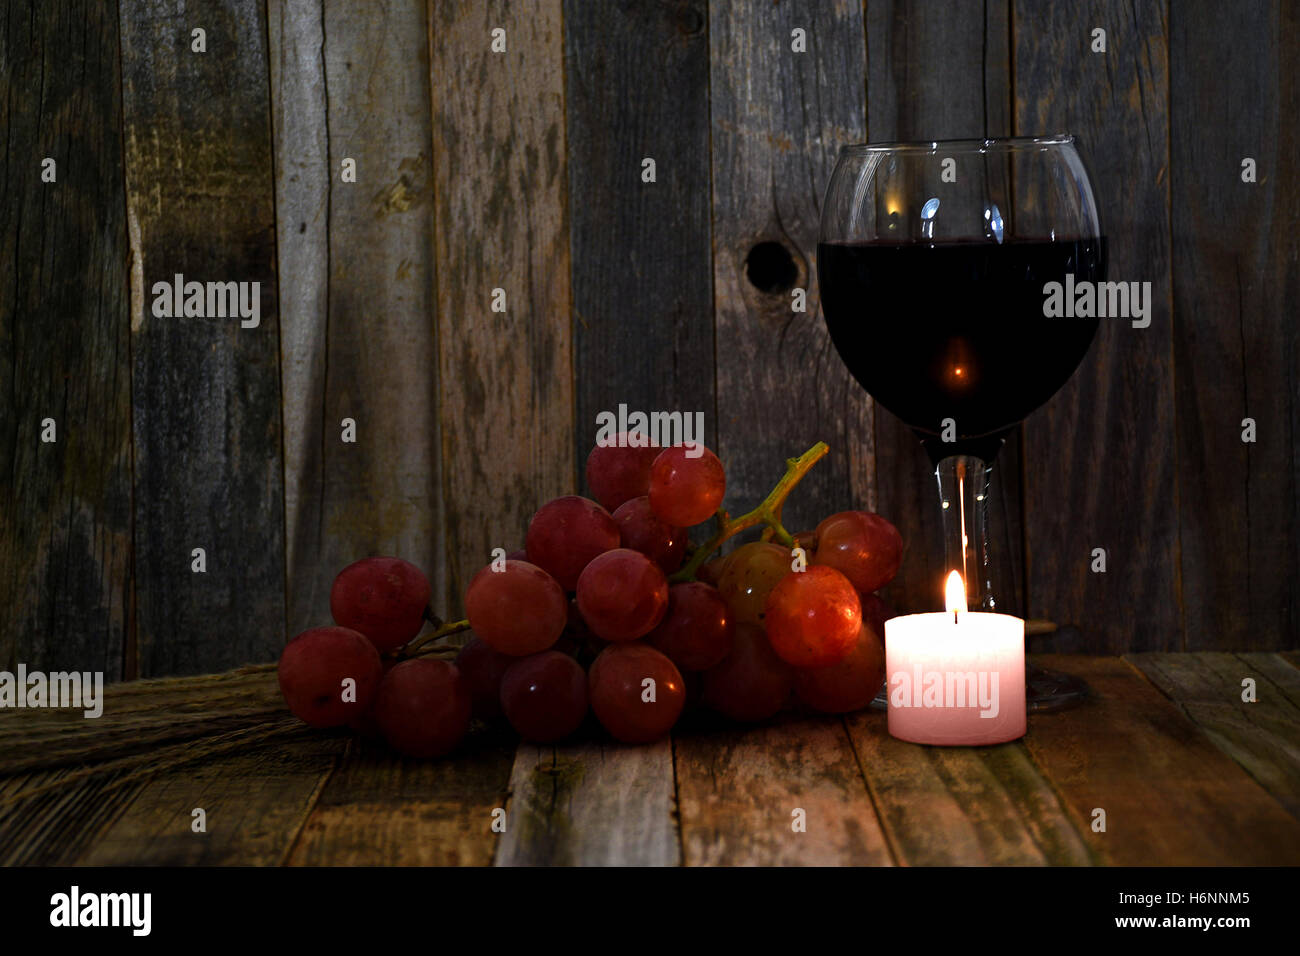 Vin rouge dans le verre avec des raisins et glowing bougie sur bois rustique Banque D'Images